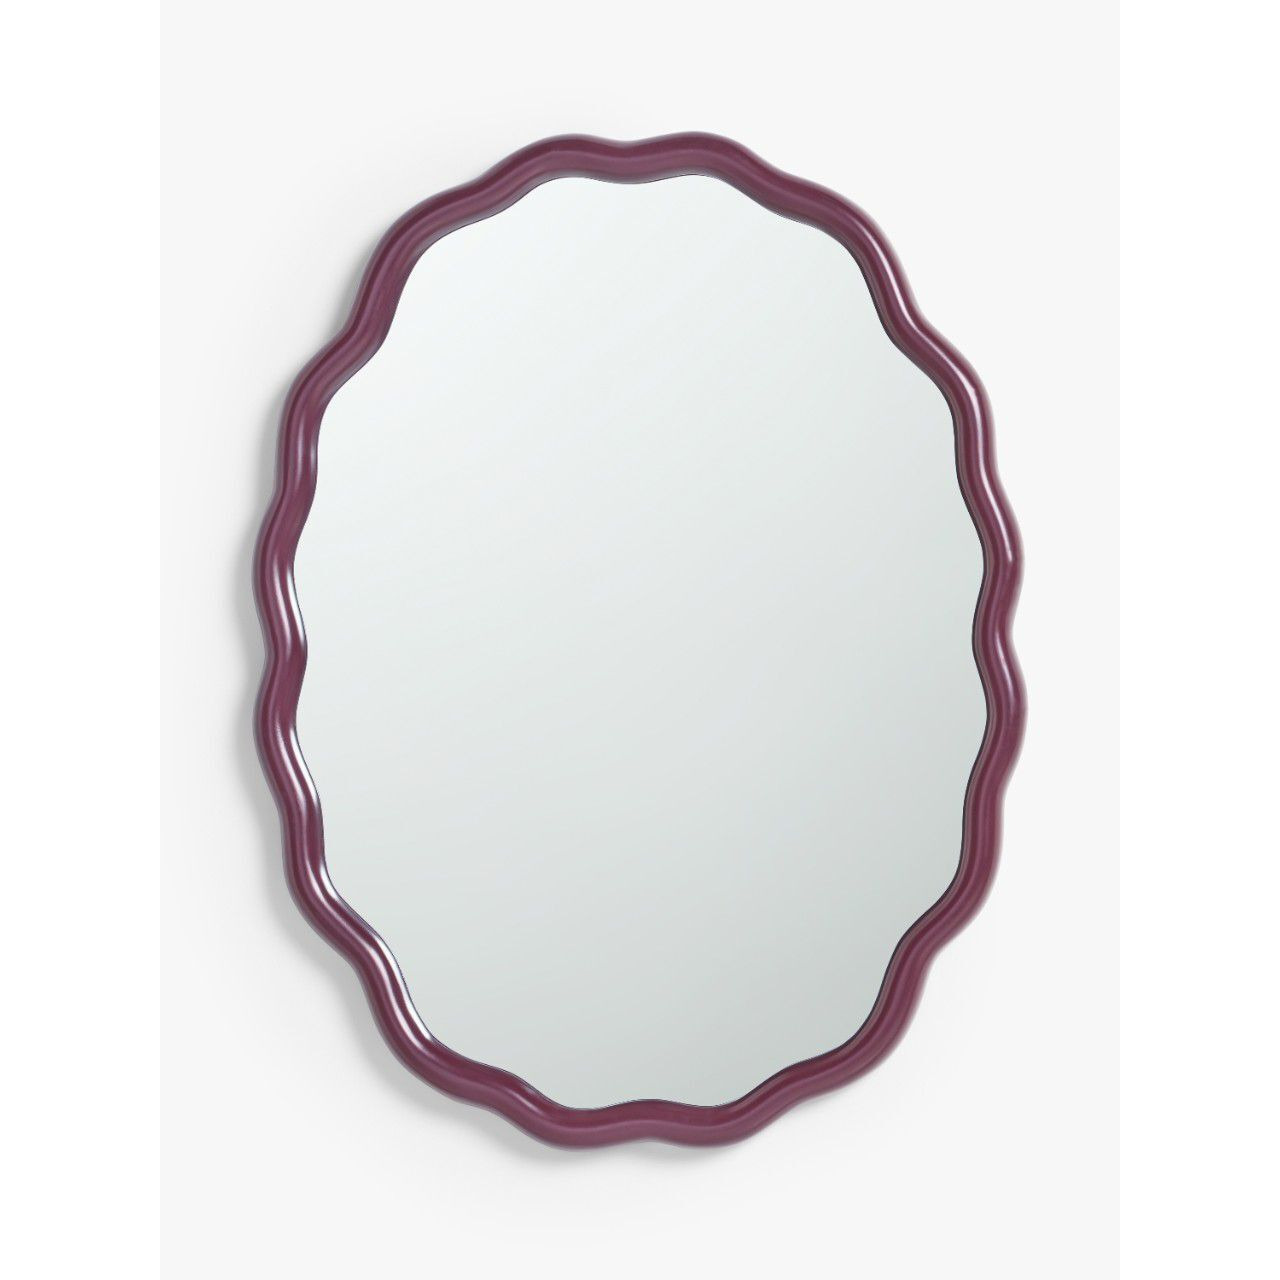 John Lewis Wiggle Oval Wall Mirror, 73 x 55.5cm - image 1